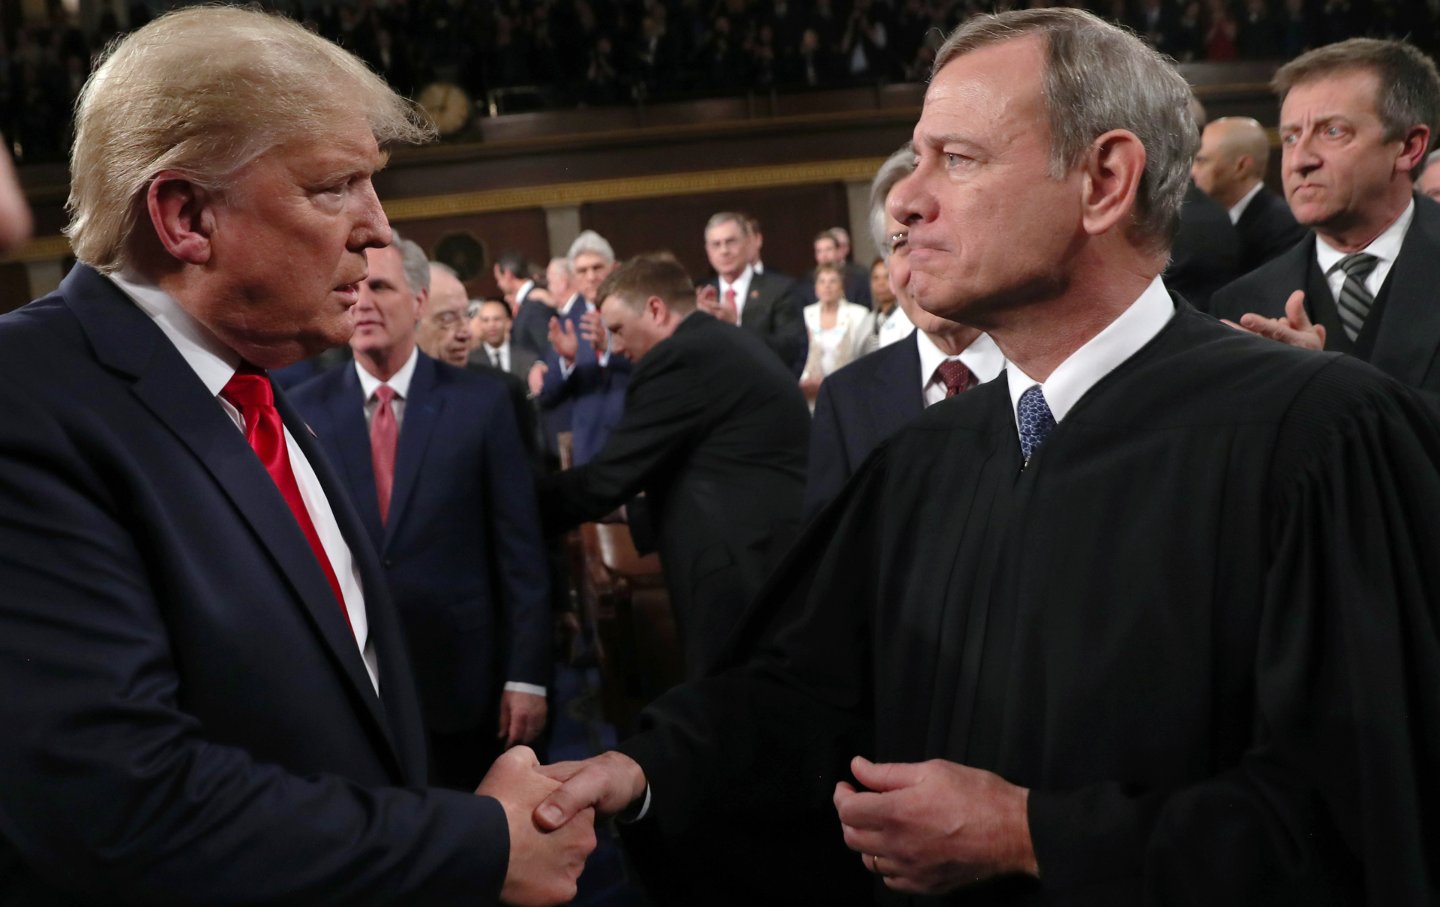 Präsident Donald Trump schüttelt dem Obersten Richter des Obersten Gerichtshofs, John Roberts, vor der Rede zur Lage der Nation am 4. Februar 2020 im Plenarsaal des Repräsentantenhauses in Washington, D.C. die Hand